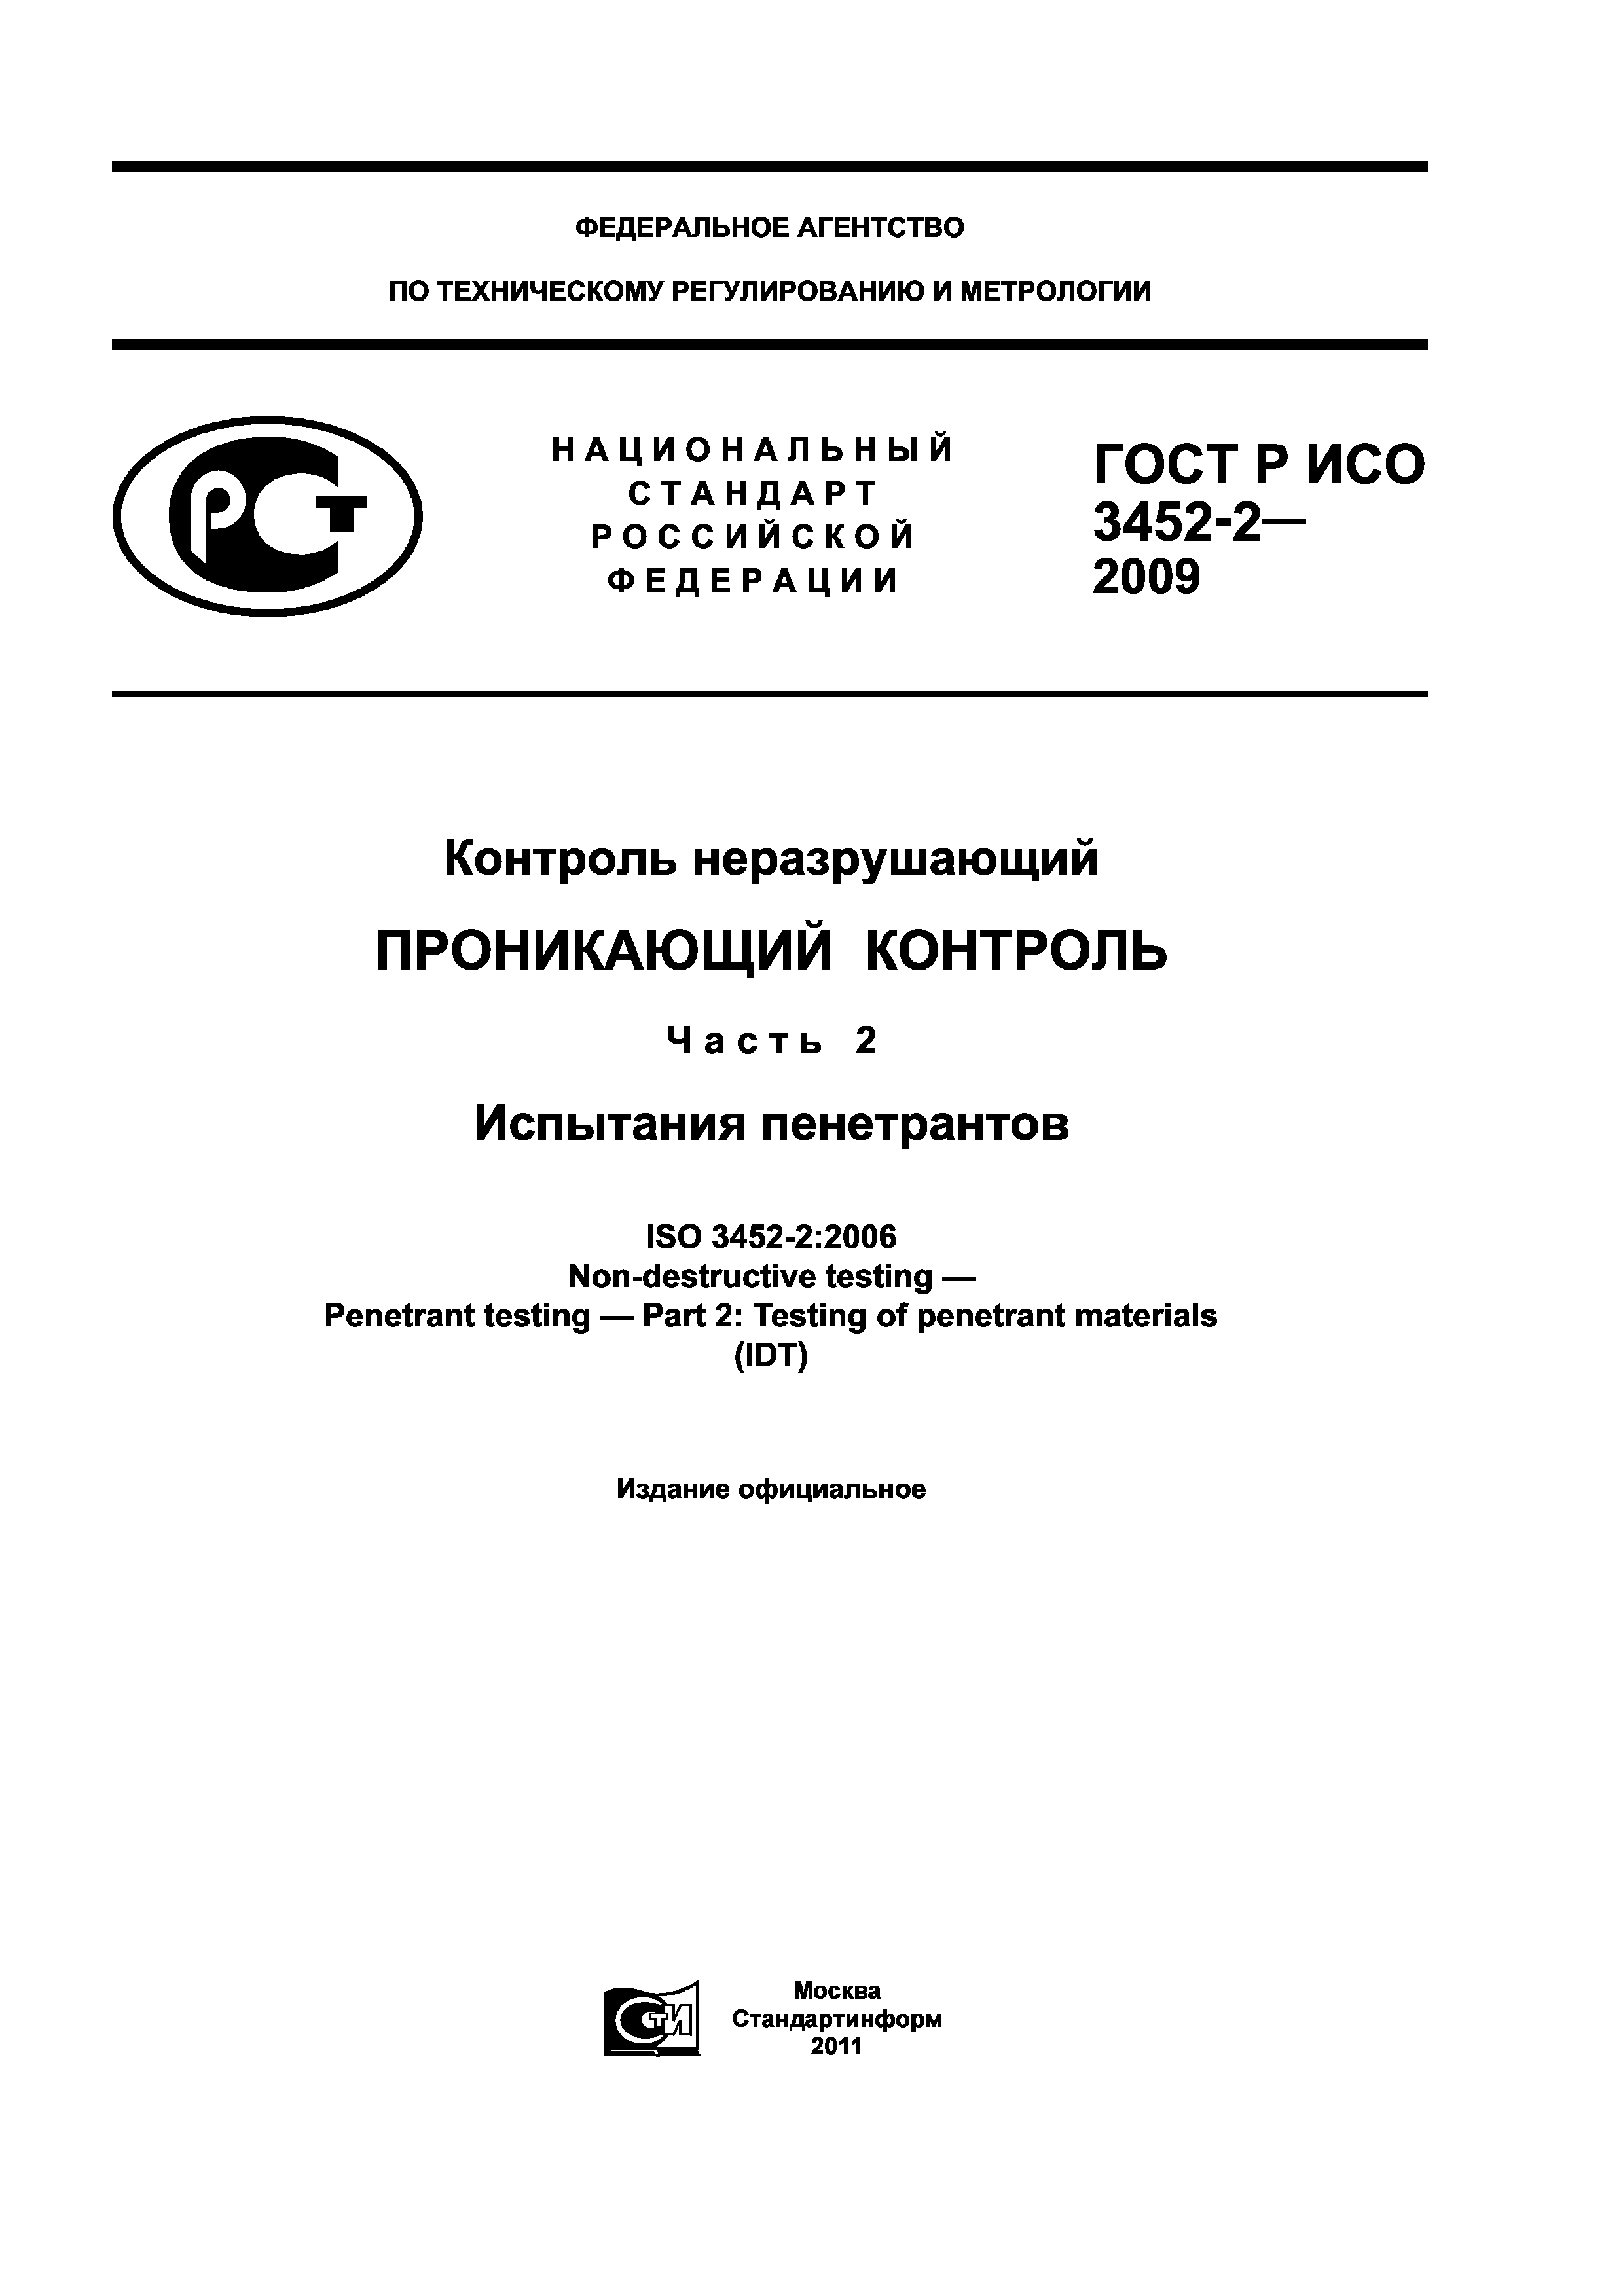 ГОСТ Р ИСО 3452-2-2009